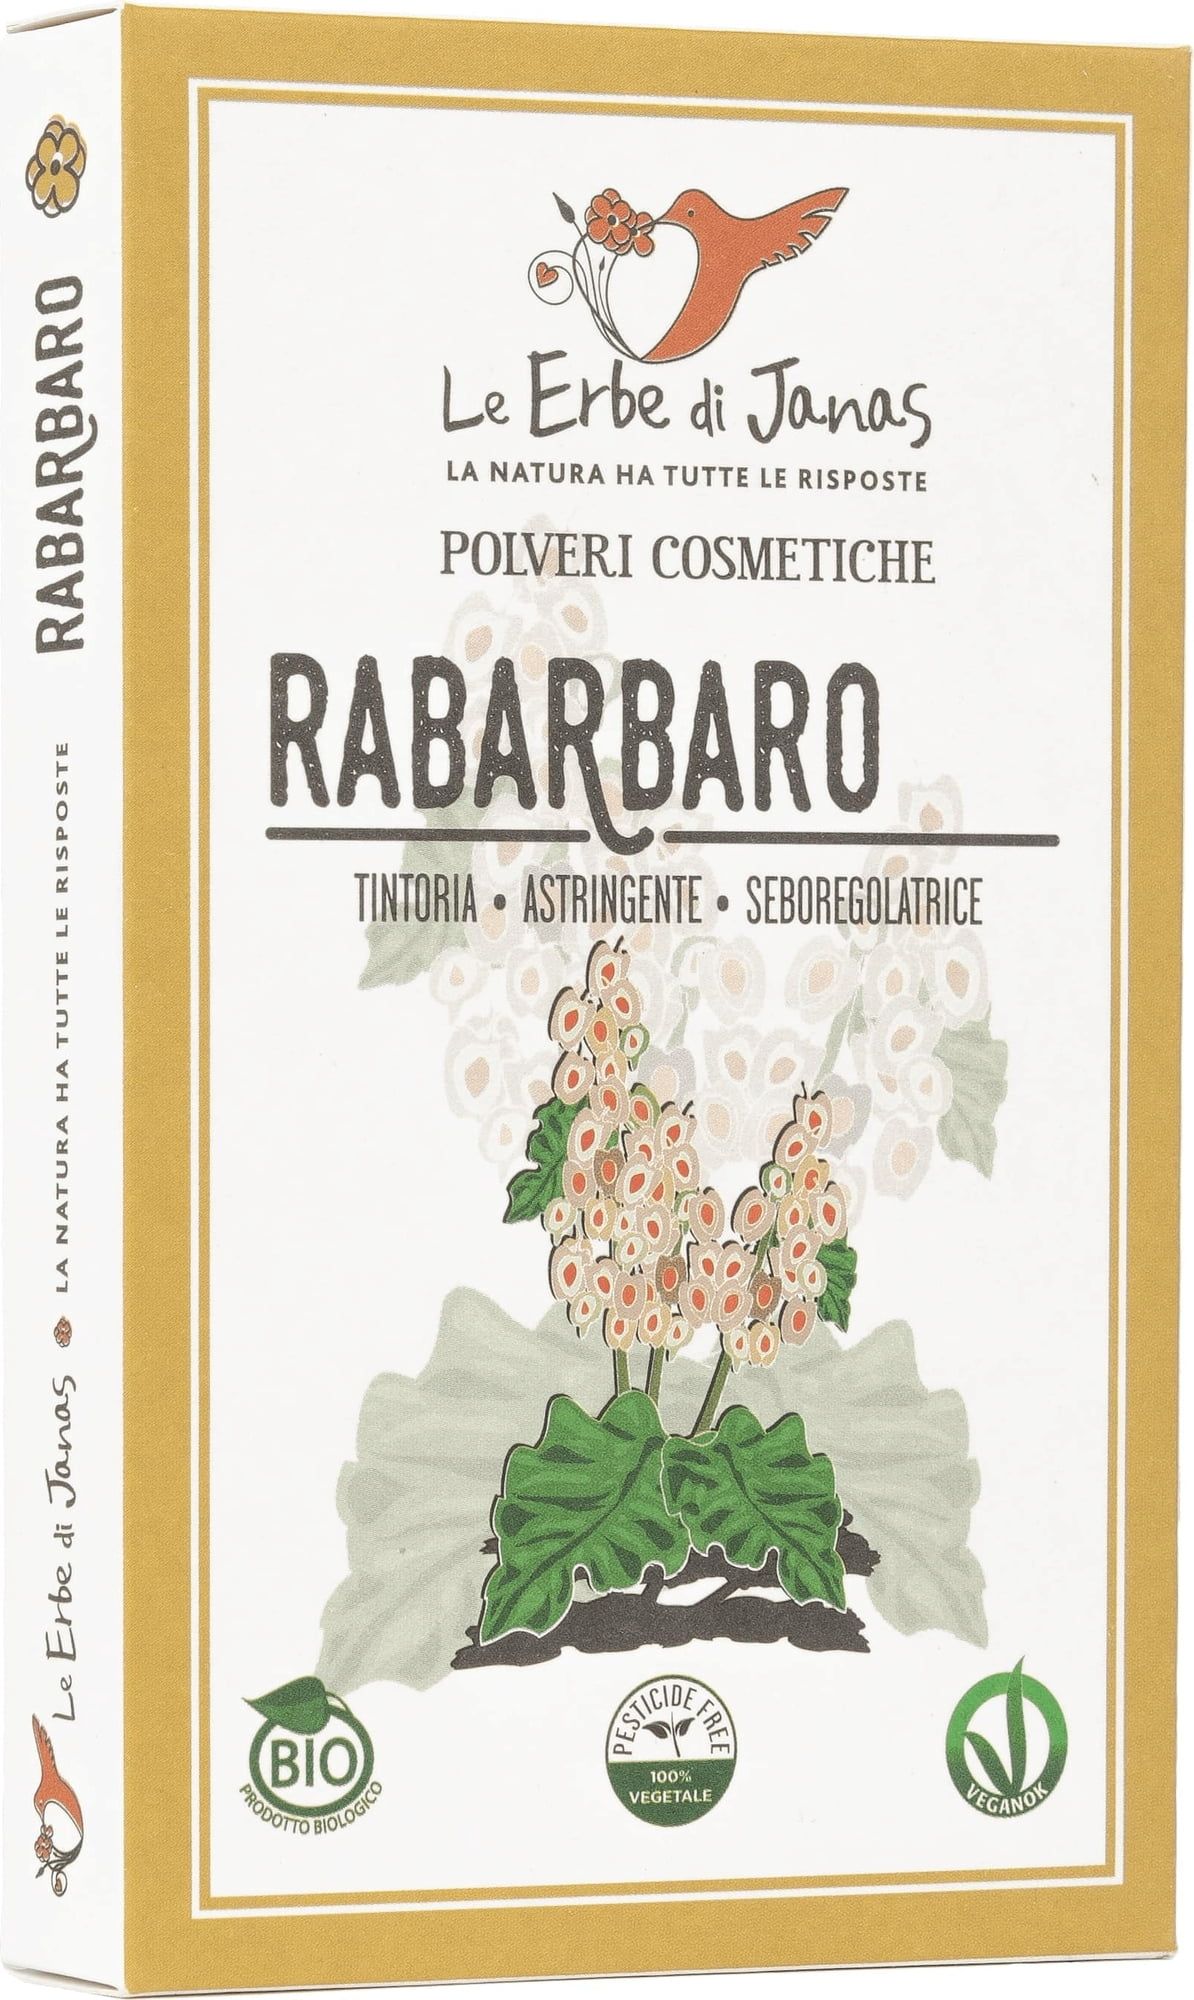 Le Erbe di Janas Rabarbaro (Rhapontic) - 100 g